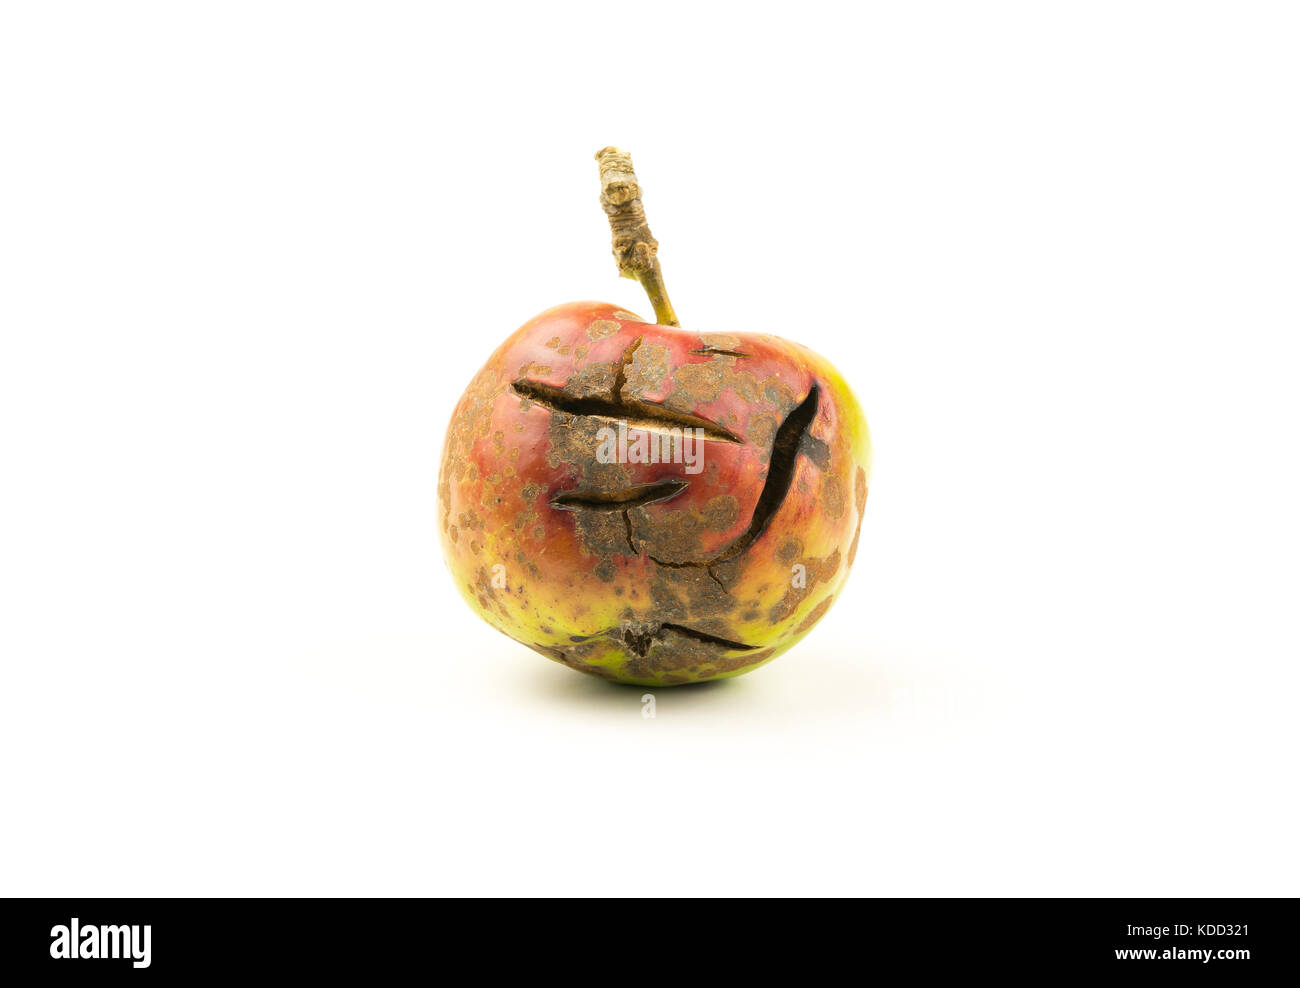 Geknackt Apple auf einem weißen Hintergrund mit Text Raum. verbotene Frucht/ungesunde Ernährung Konzept Stockfoto